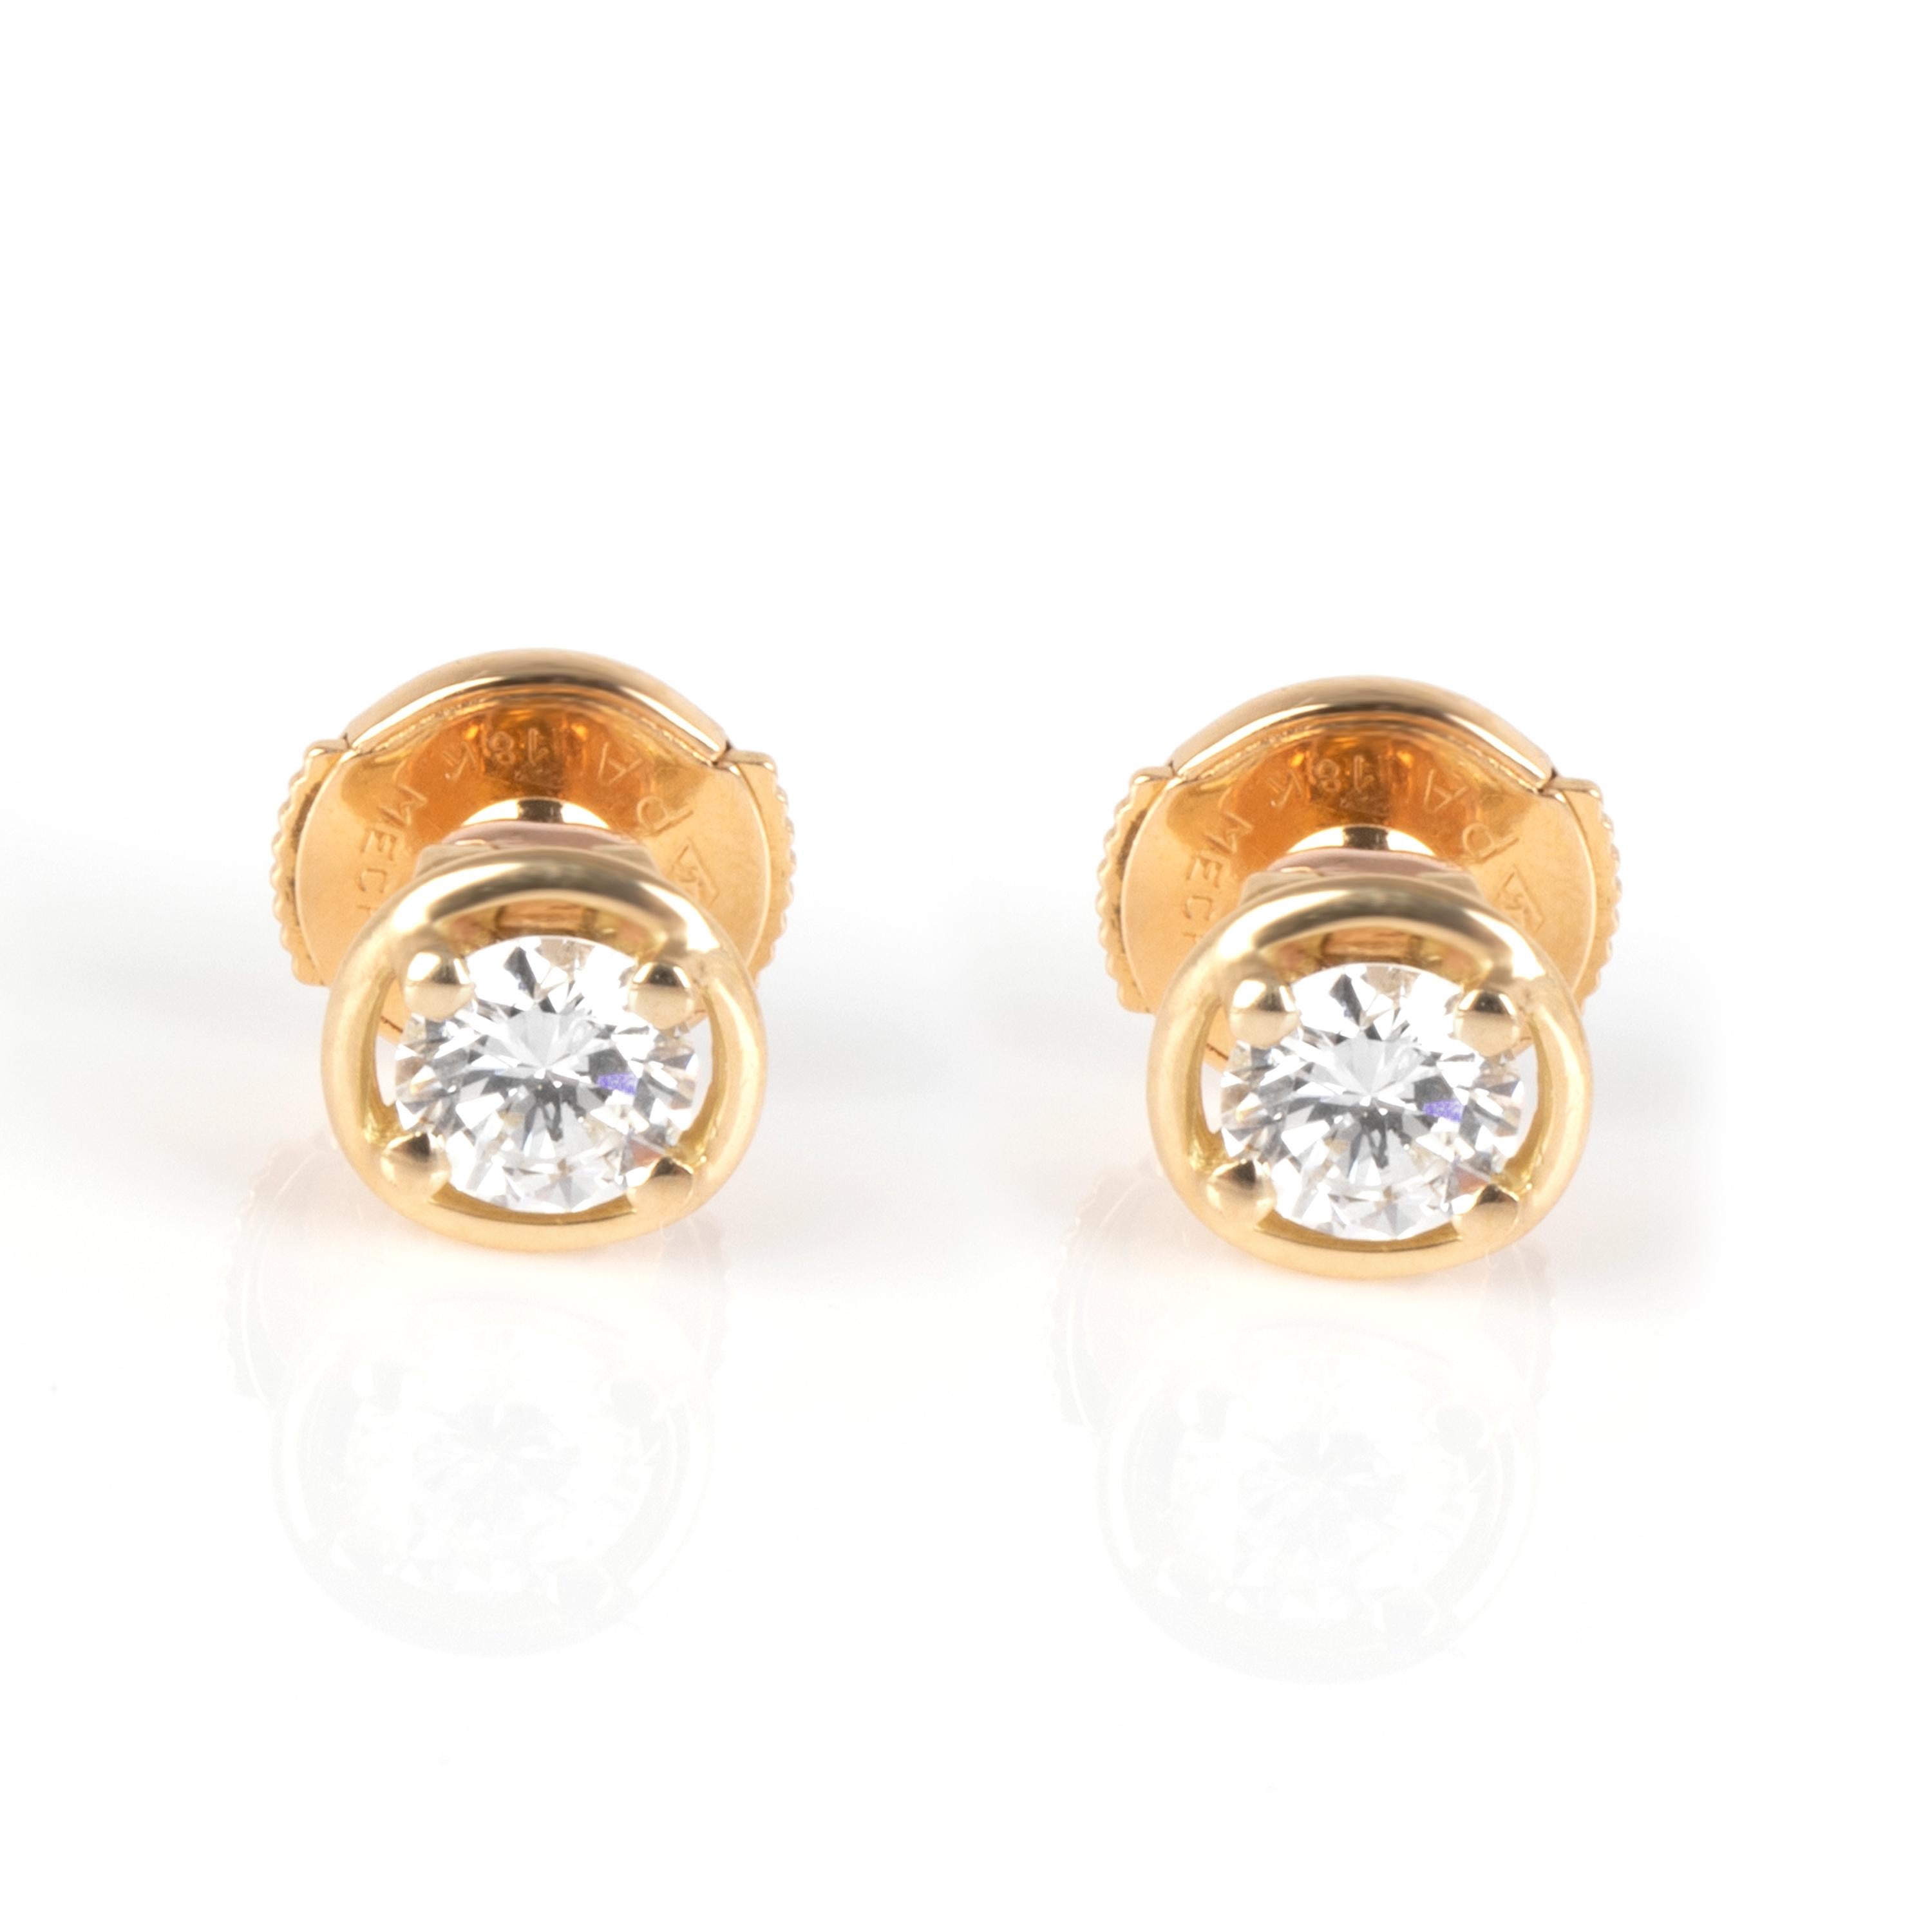 Pear Cut Van Cleef & Arpels La Pluie Diamond Drop Earrings in 18K Yellow Gold D VVS1 1